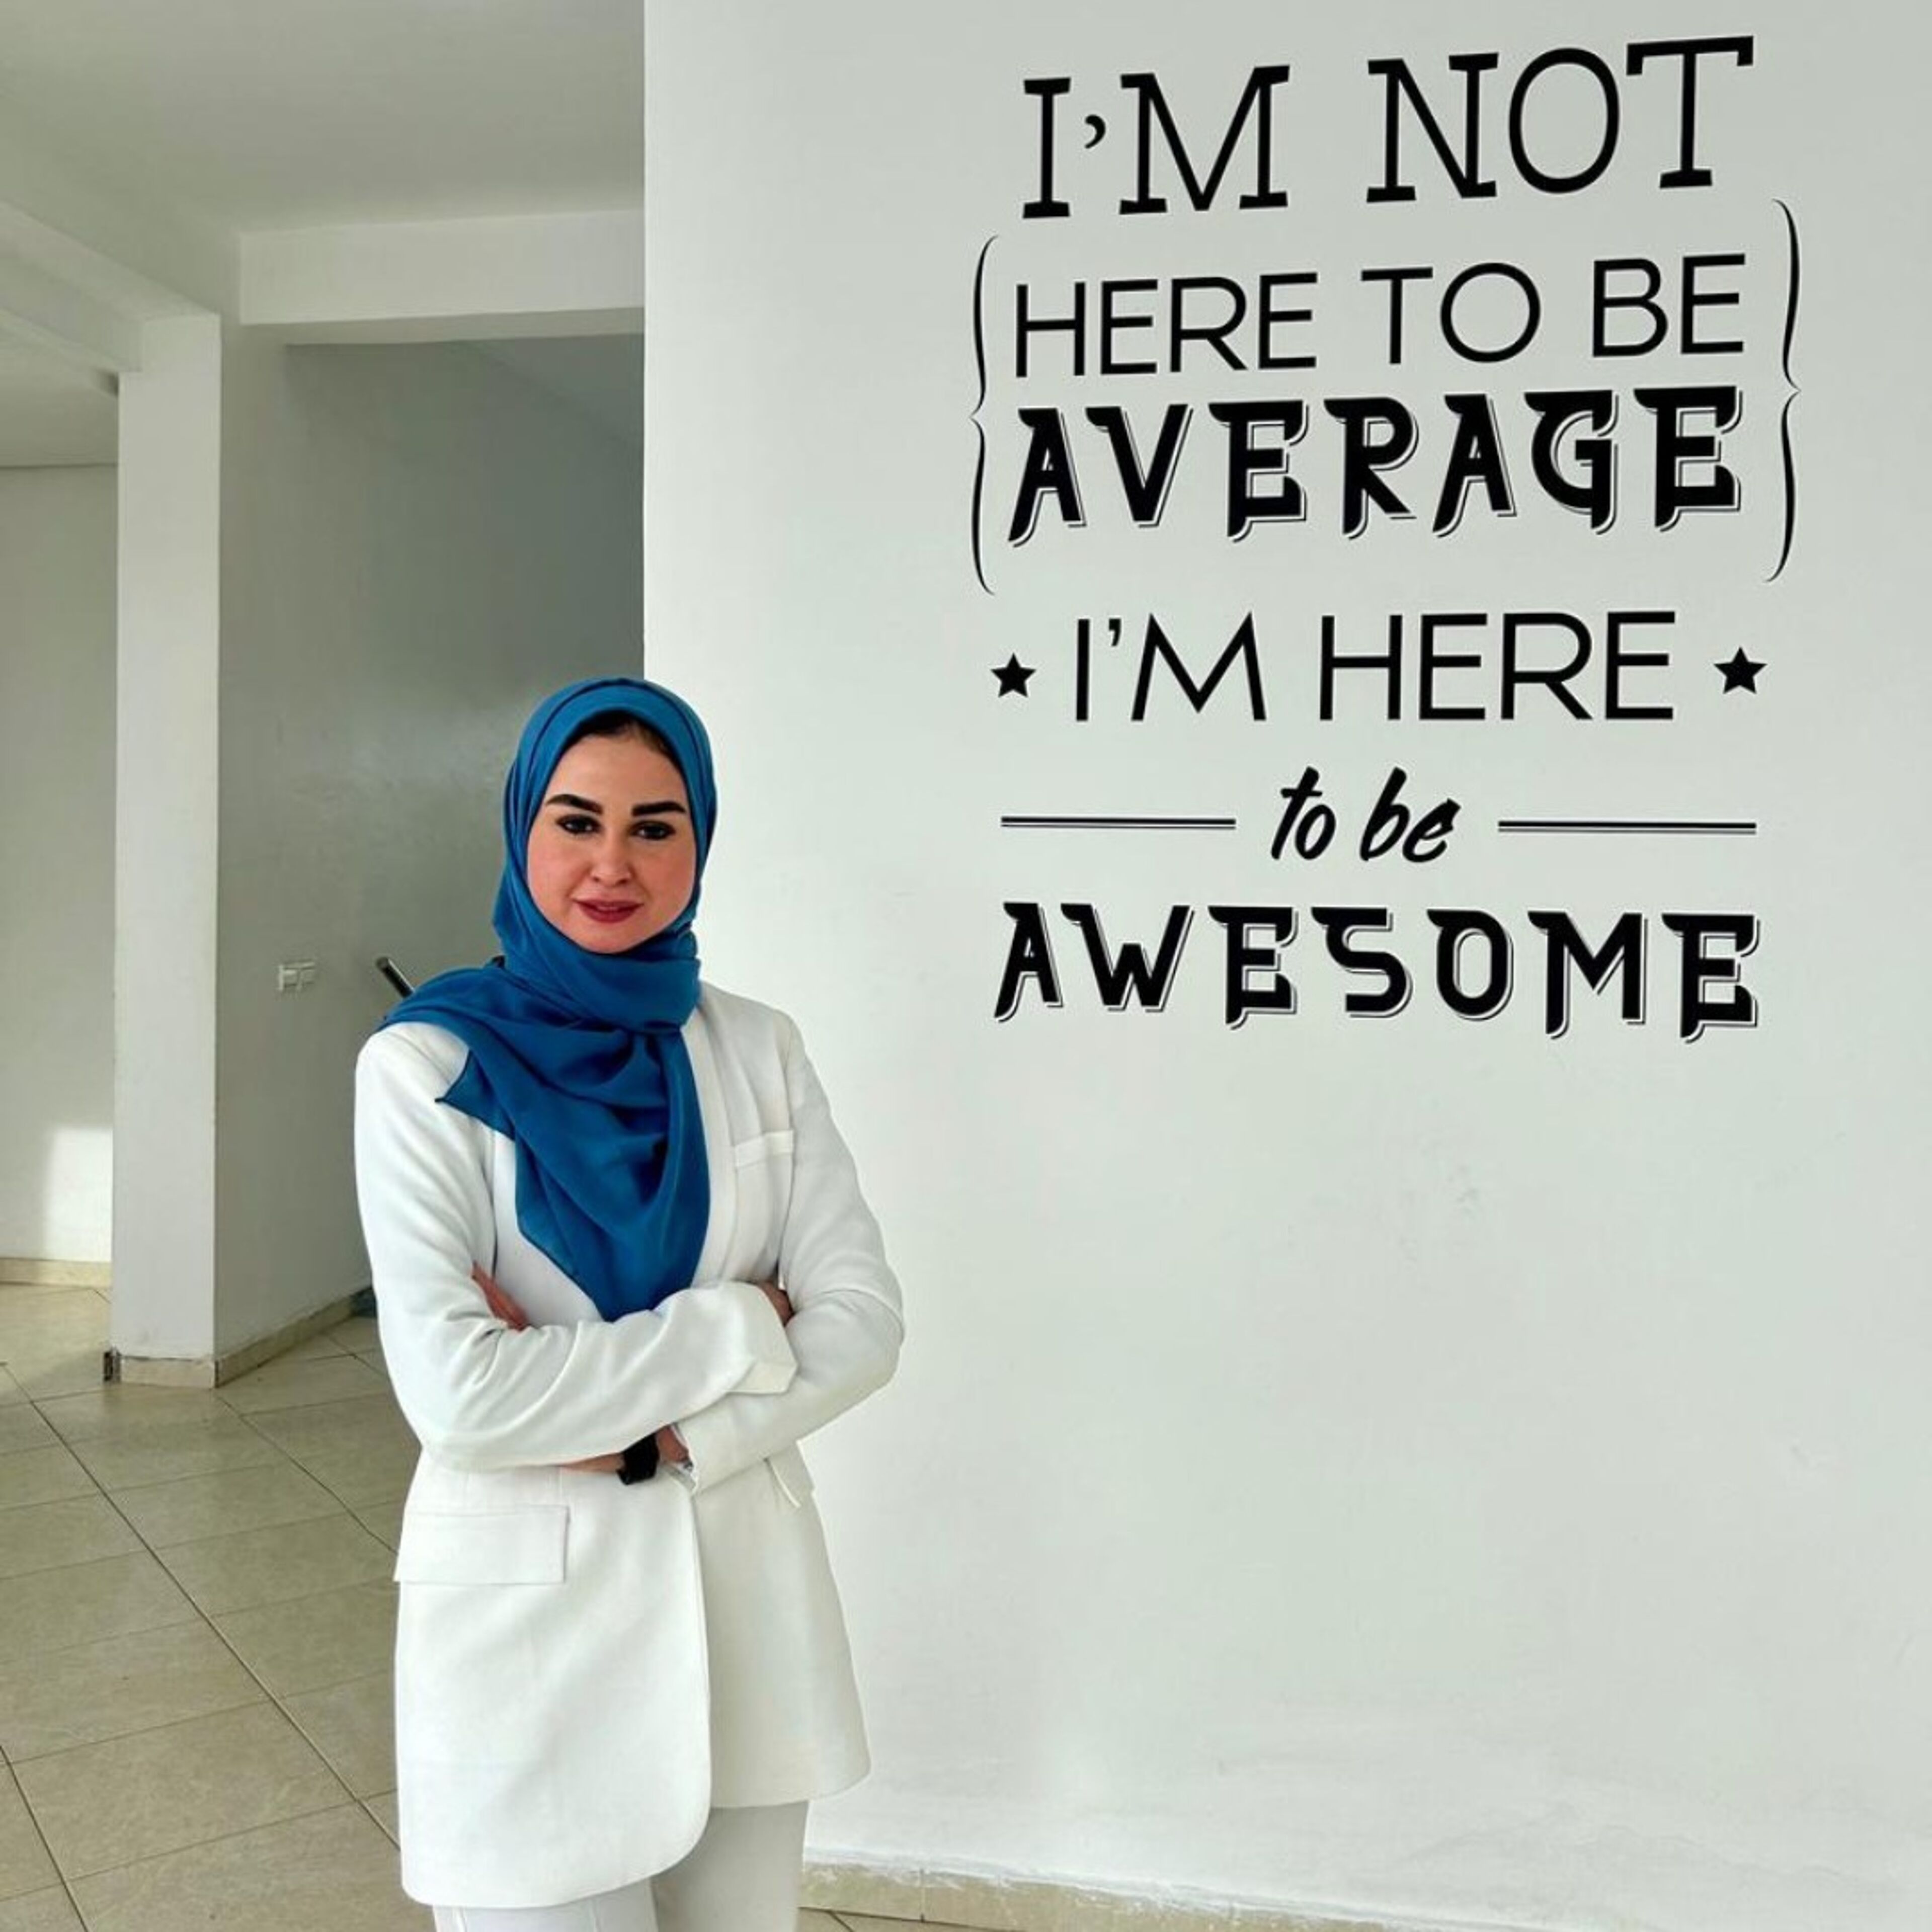 Une femme posée en manteau blanc et hijab bleu se tient fièrement devant un mur portant la citation motivante "JE NE SUIS PAS ICI POUR ÊTRE MOYENNE, JE SUIS LÀ pour être GÉNIALE".